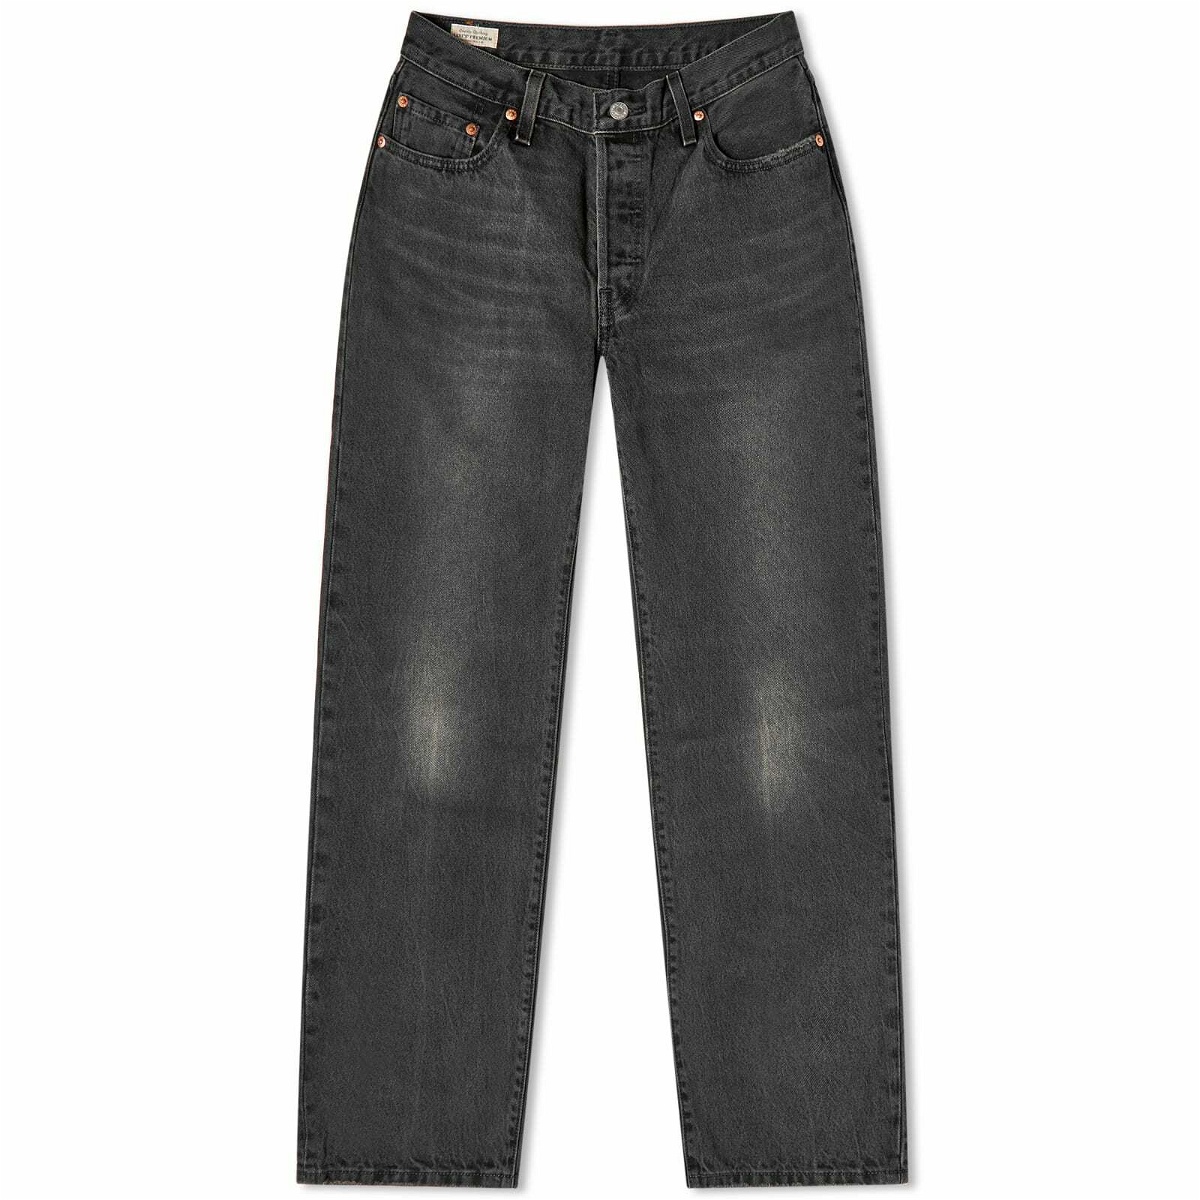 Levi's Women's 501 Jeans in Black Levis